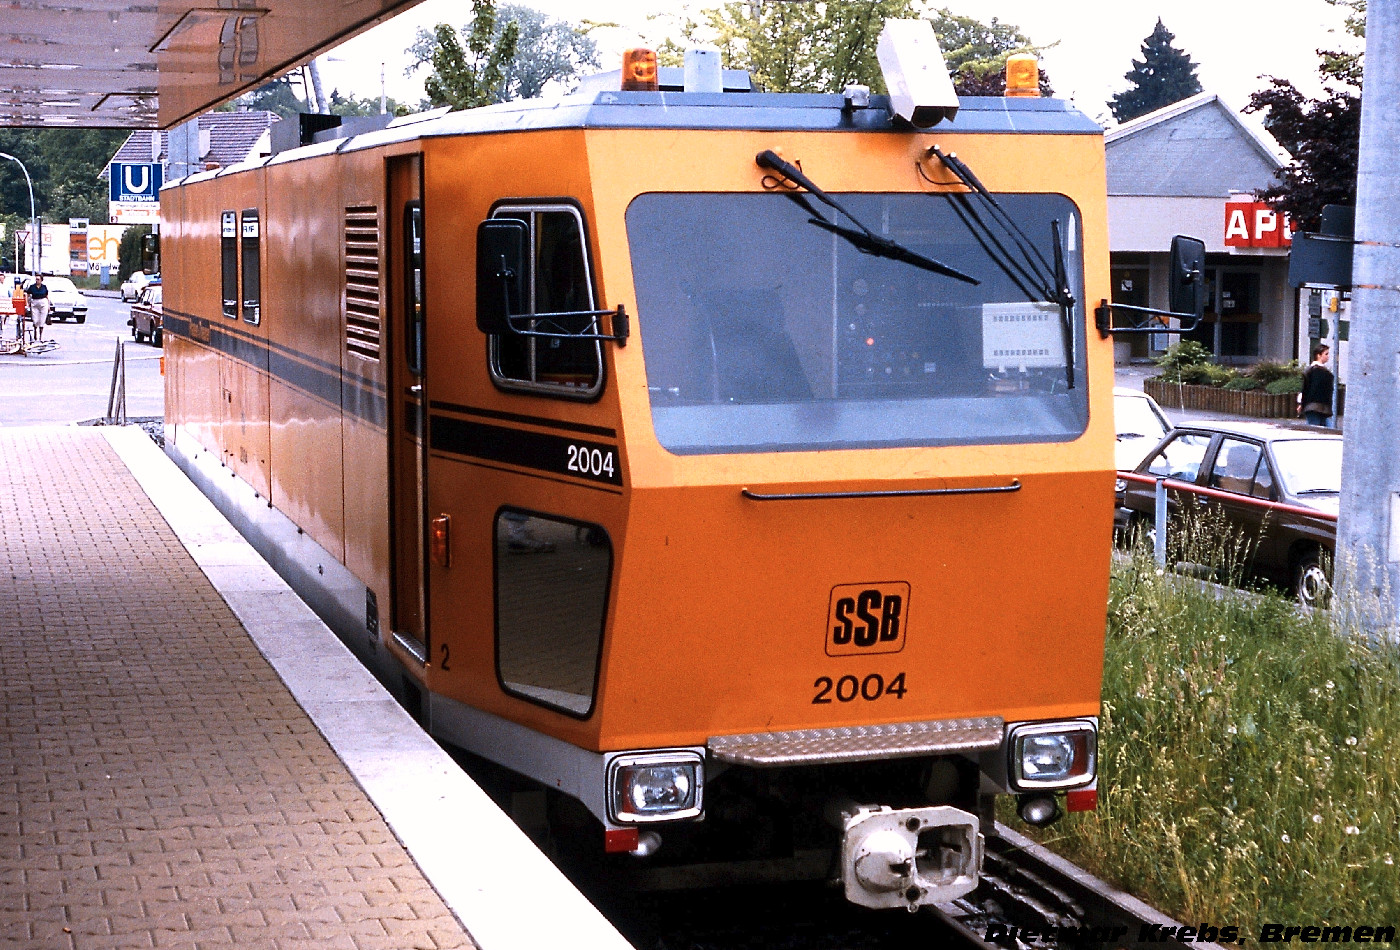 4-axle service Locomotive #2004